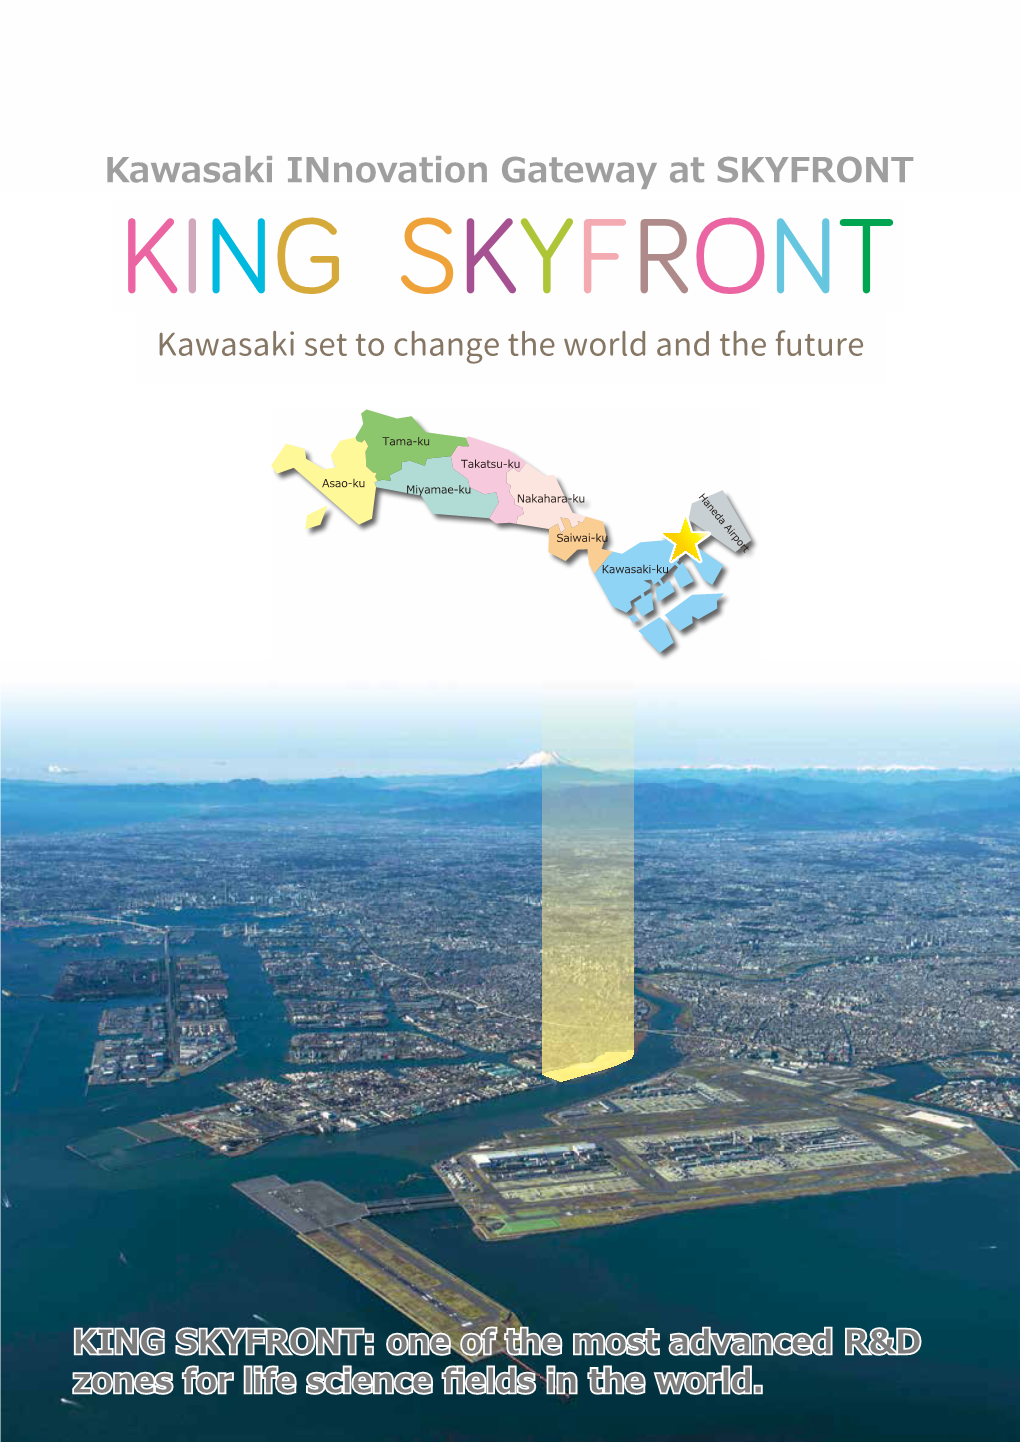 King Skyfront?